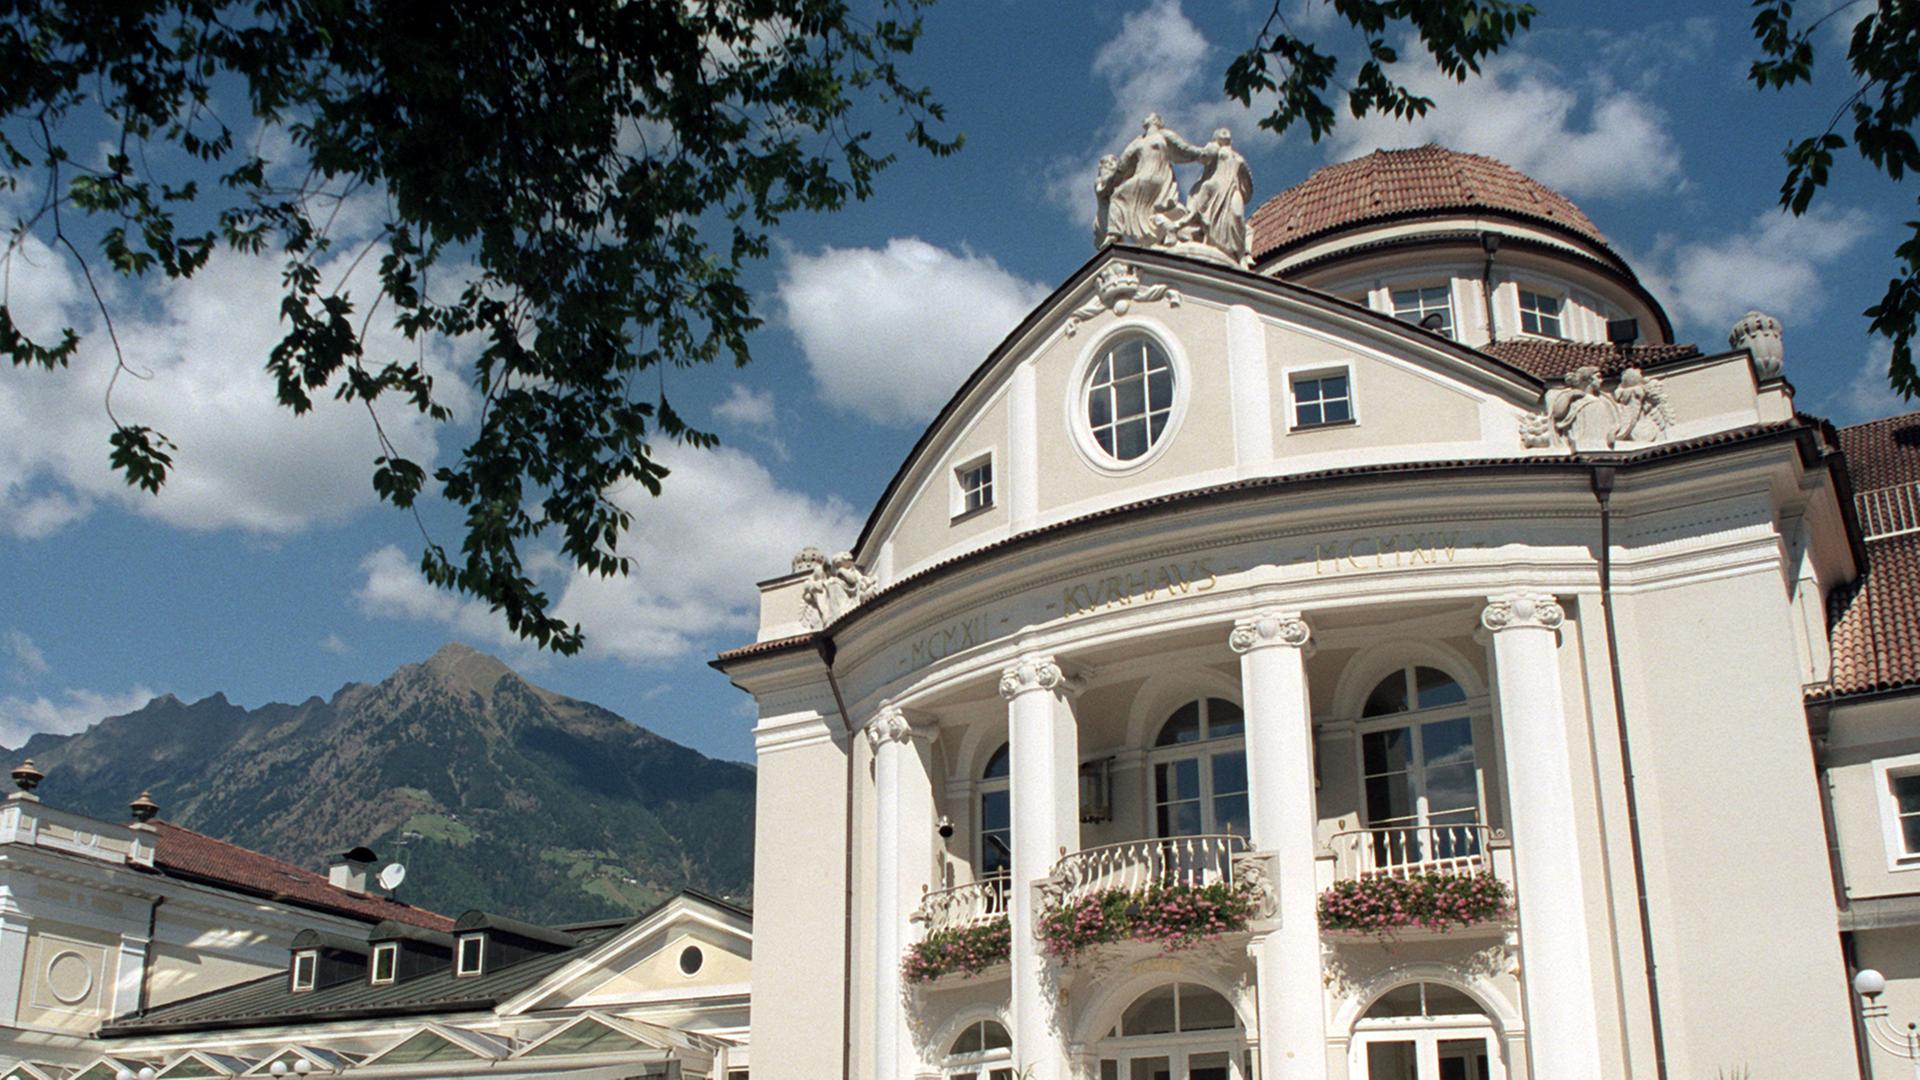 Blick am 02.09.2003 auf das Kurhaus von Meran, dem Kurort an der Passer und zugleich mit mehr als 30.000 Einwohnern zweitgrößten Stadt Südtirols.